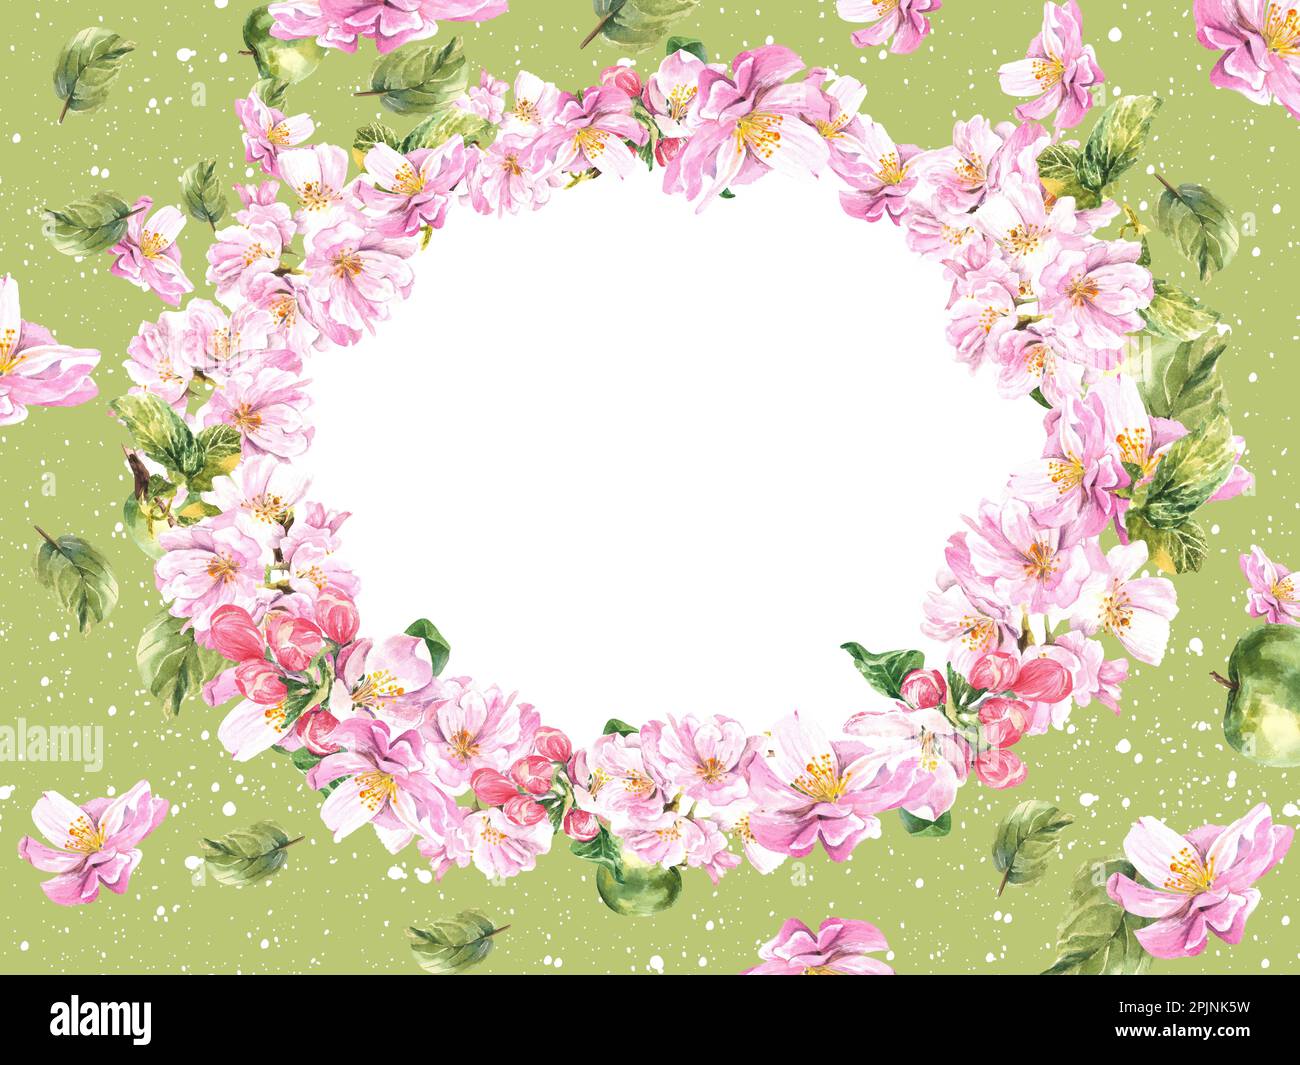 Composizione ovale di un albero di mela fiorito su sfondo verde. Illustrazione di acquerello brillante e succoso Foto Stock